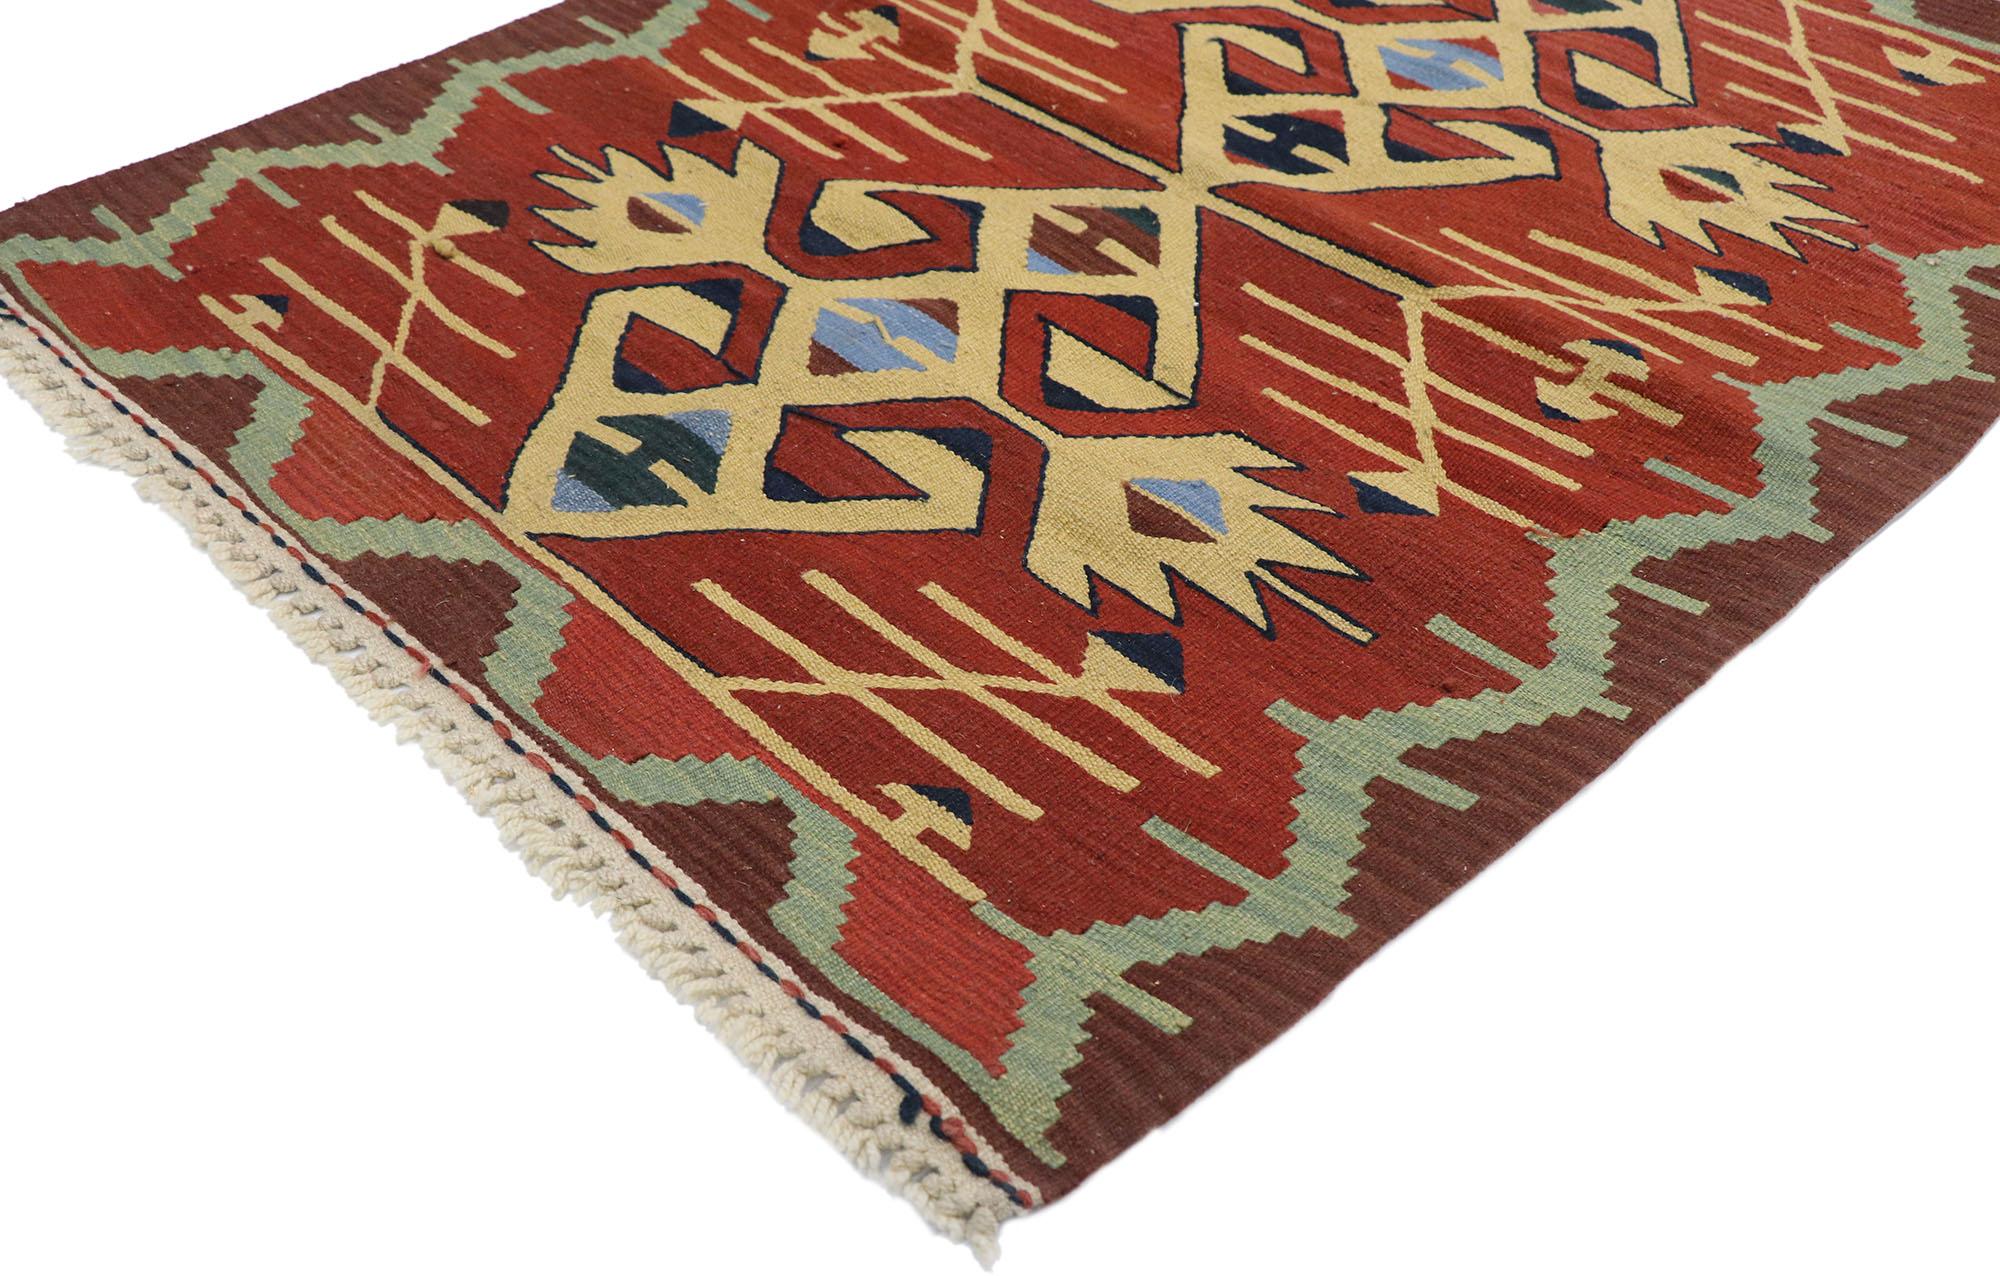 77853 Vieux tapis Persan Shiraz Kilim avec style Tribal 02'10 x 03'07. Plein de petits détails et un design expressif audacieux combiné avec des couleurs vibrantes et un style tribal, ce tapis kilim persan vintage en laine tissé à la main est une